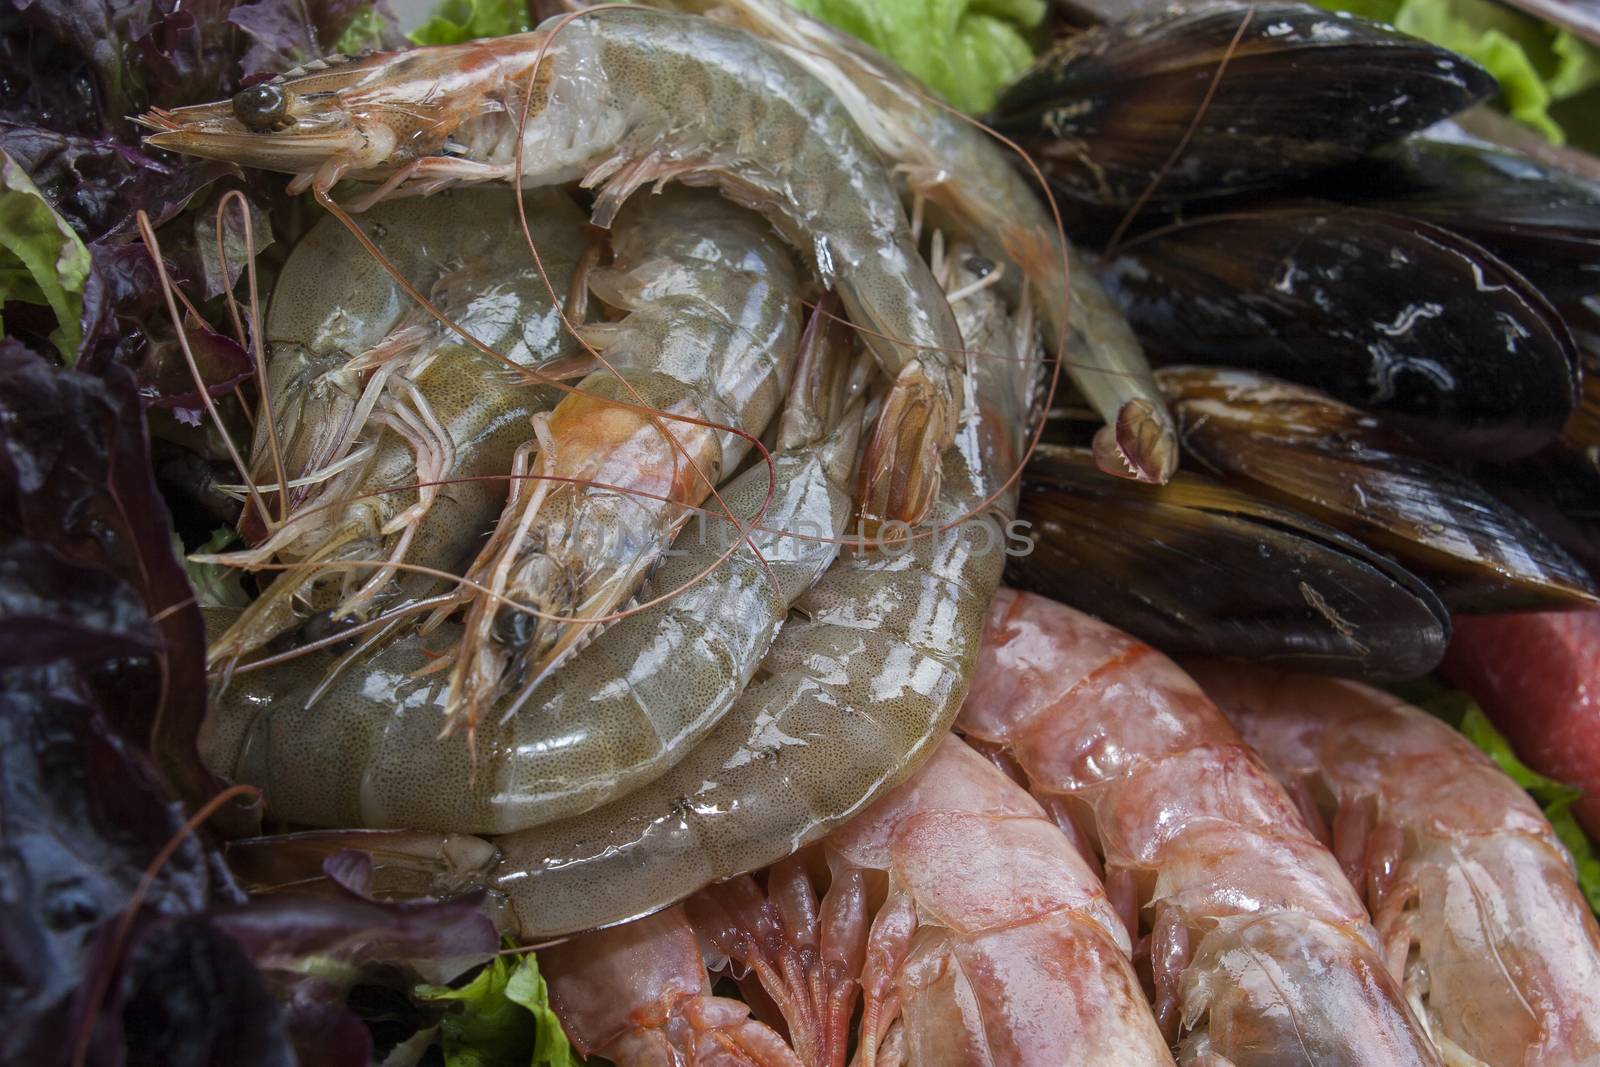 fresh shrimps on platter